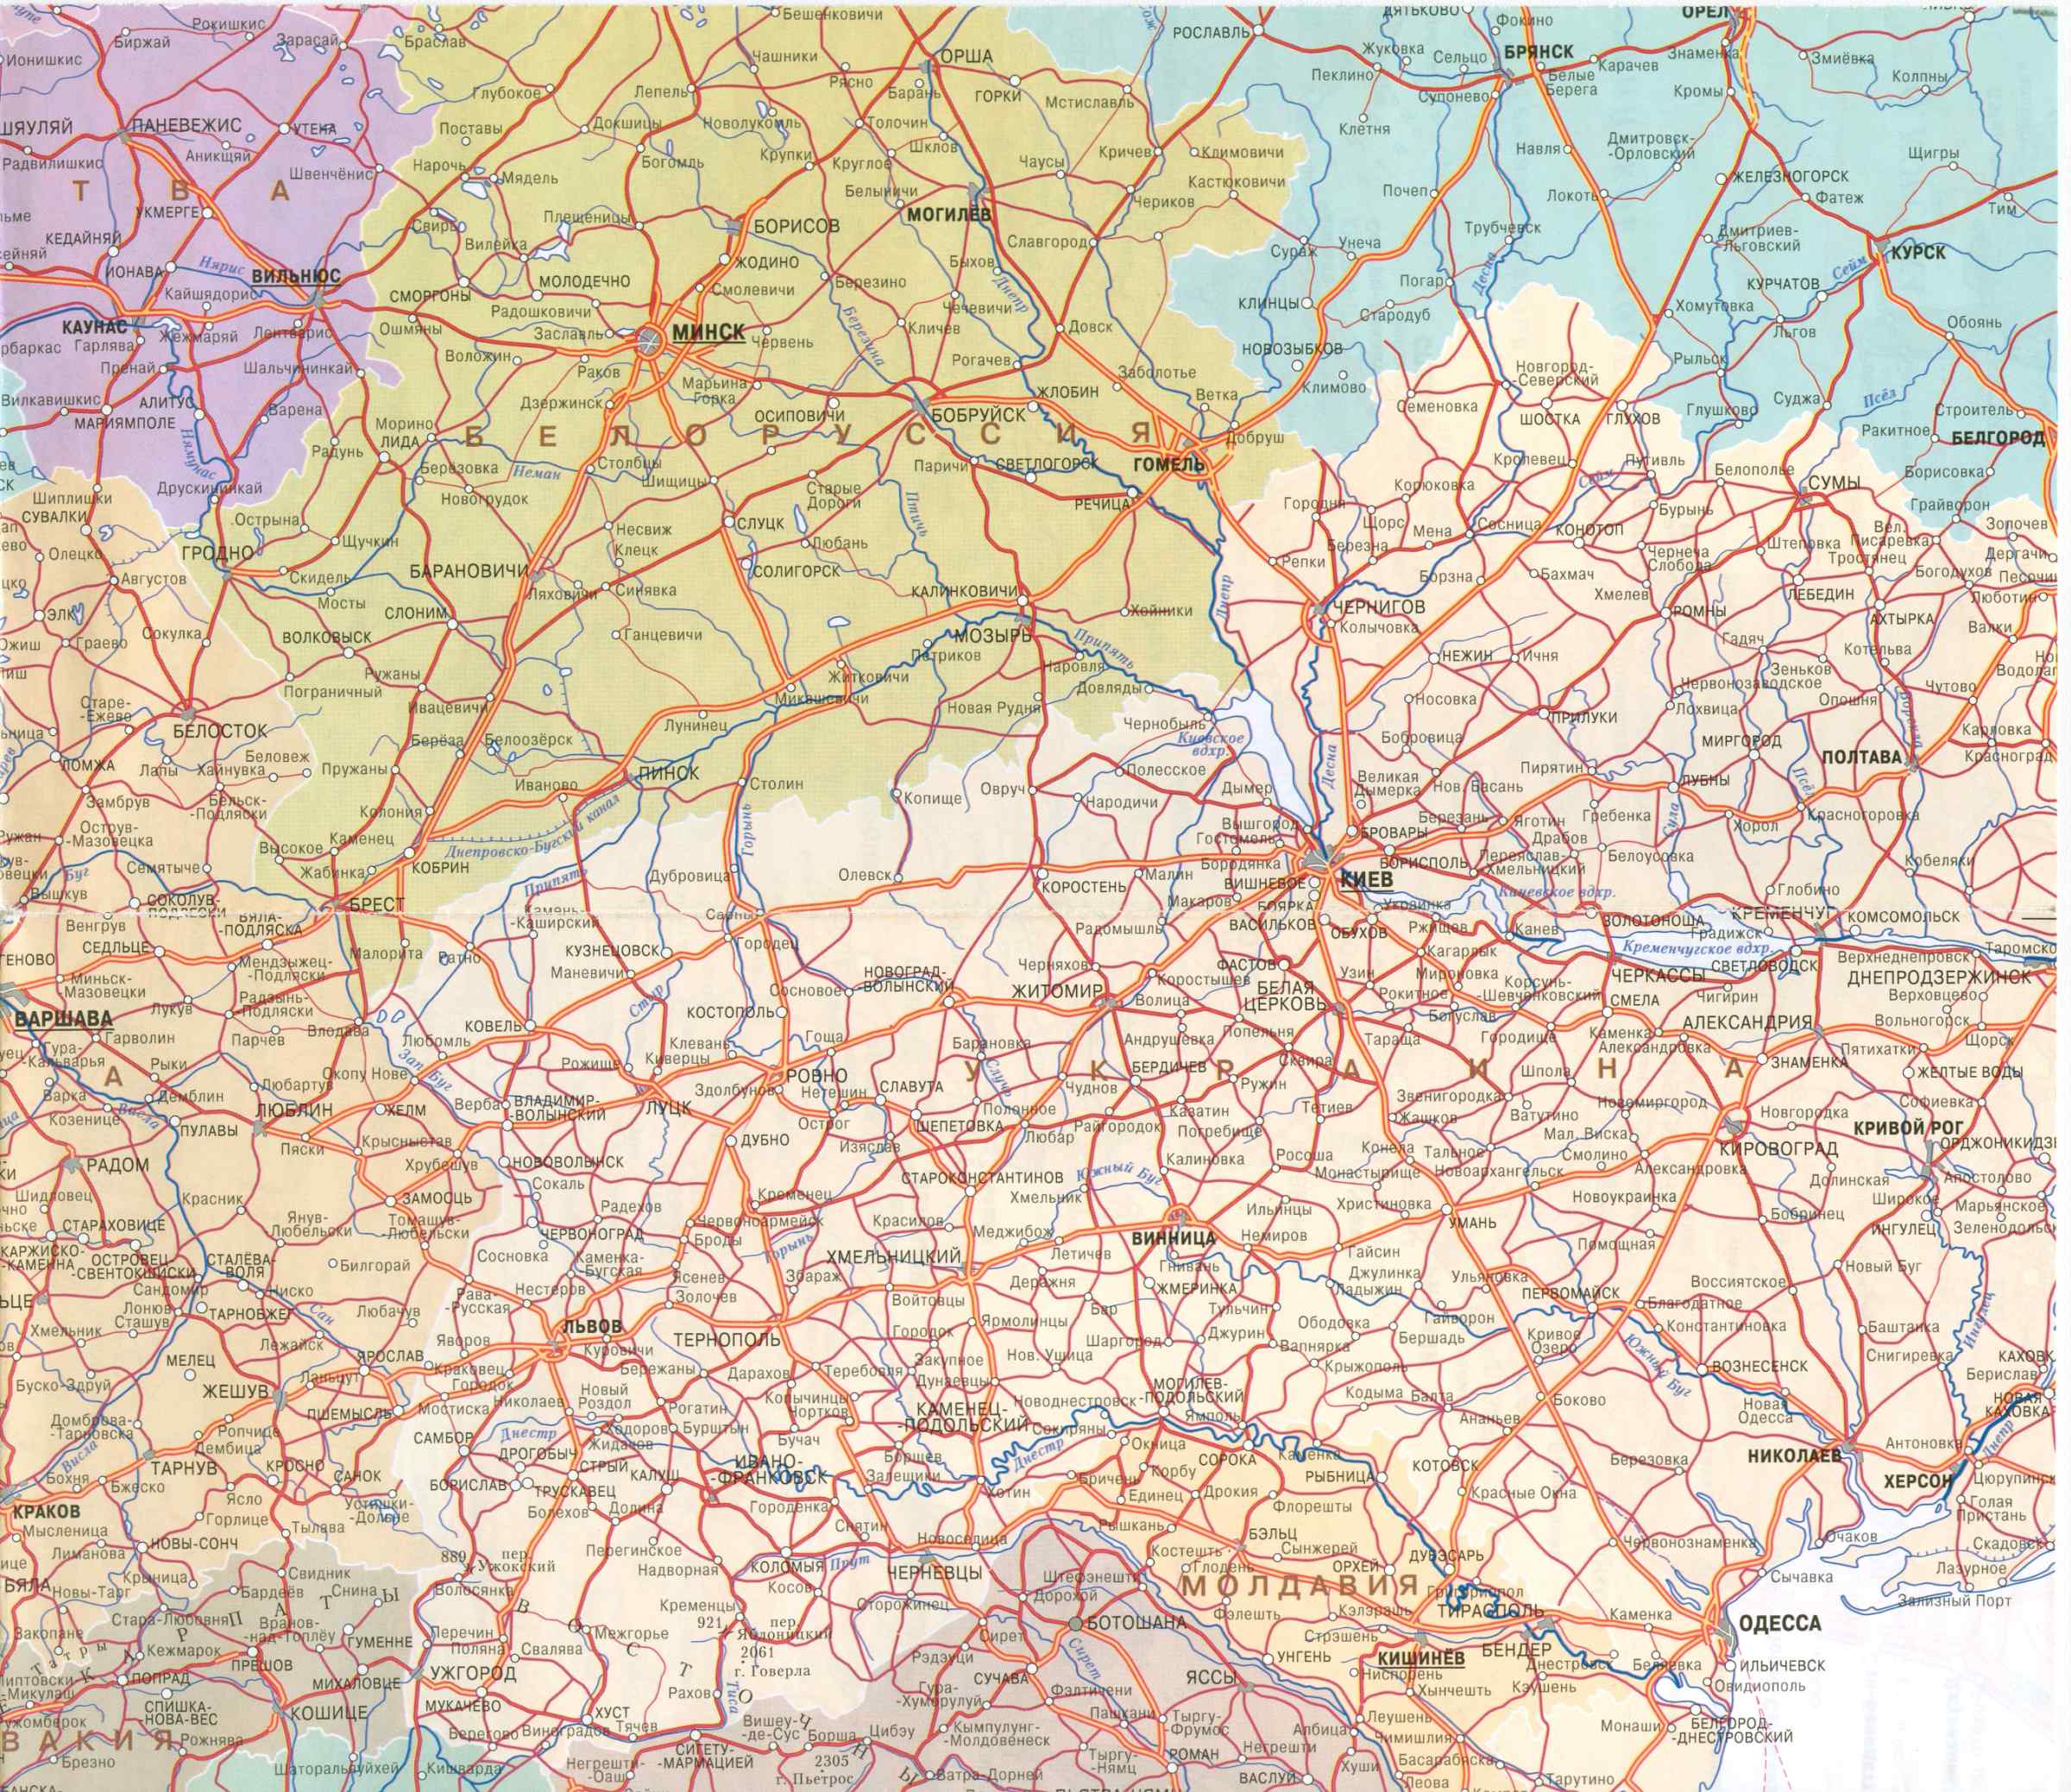  Карта автодорог Европы 1см:45км. Большая подробная карта автодорог Европы на русском языке, C2 - 